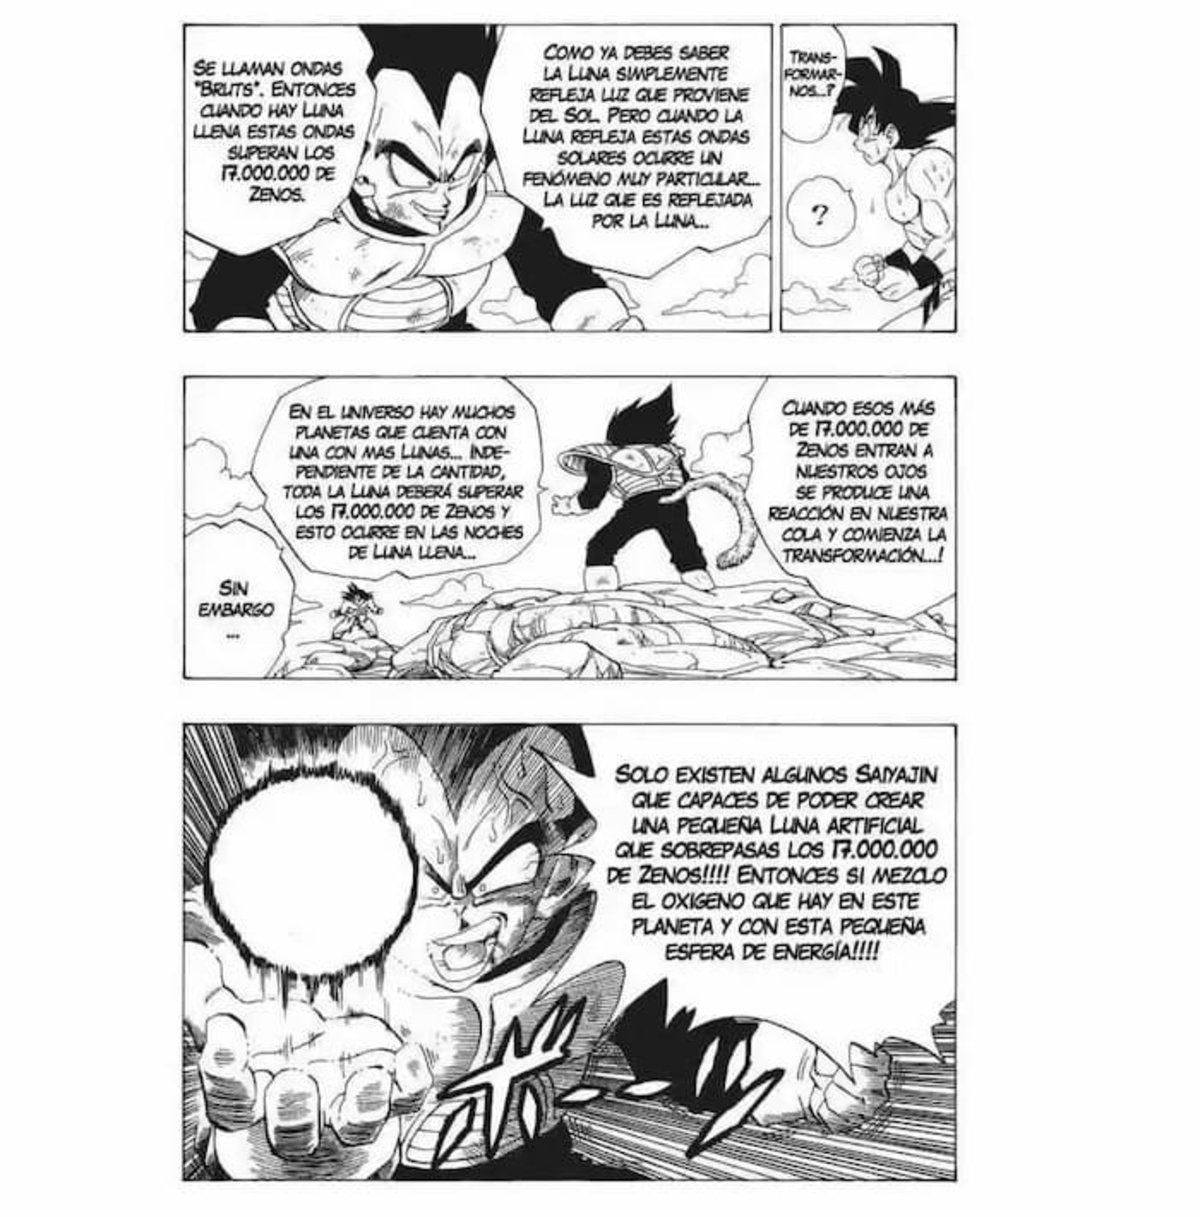 Vegeta le explica a Goku todo lo referente a esta técnica, demostrándole el amplio conocimiento que posee sobre los Saiyan